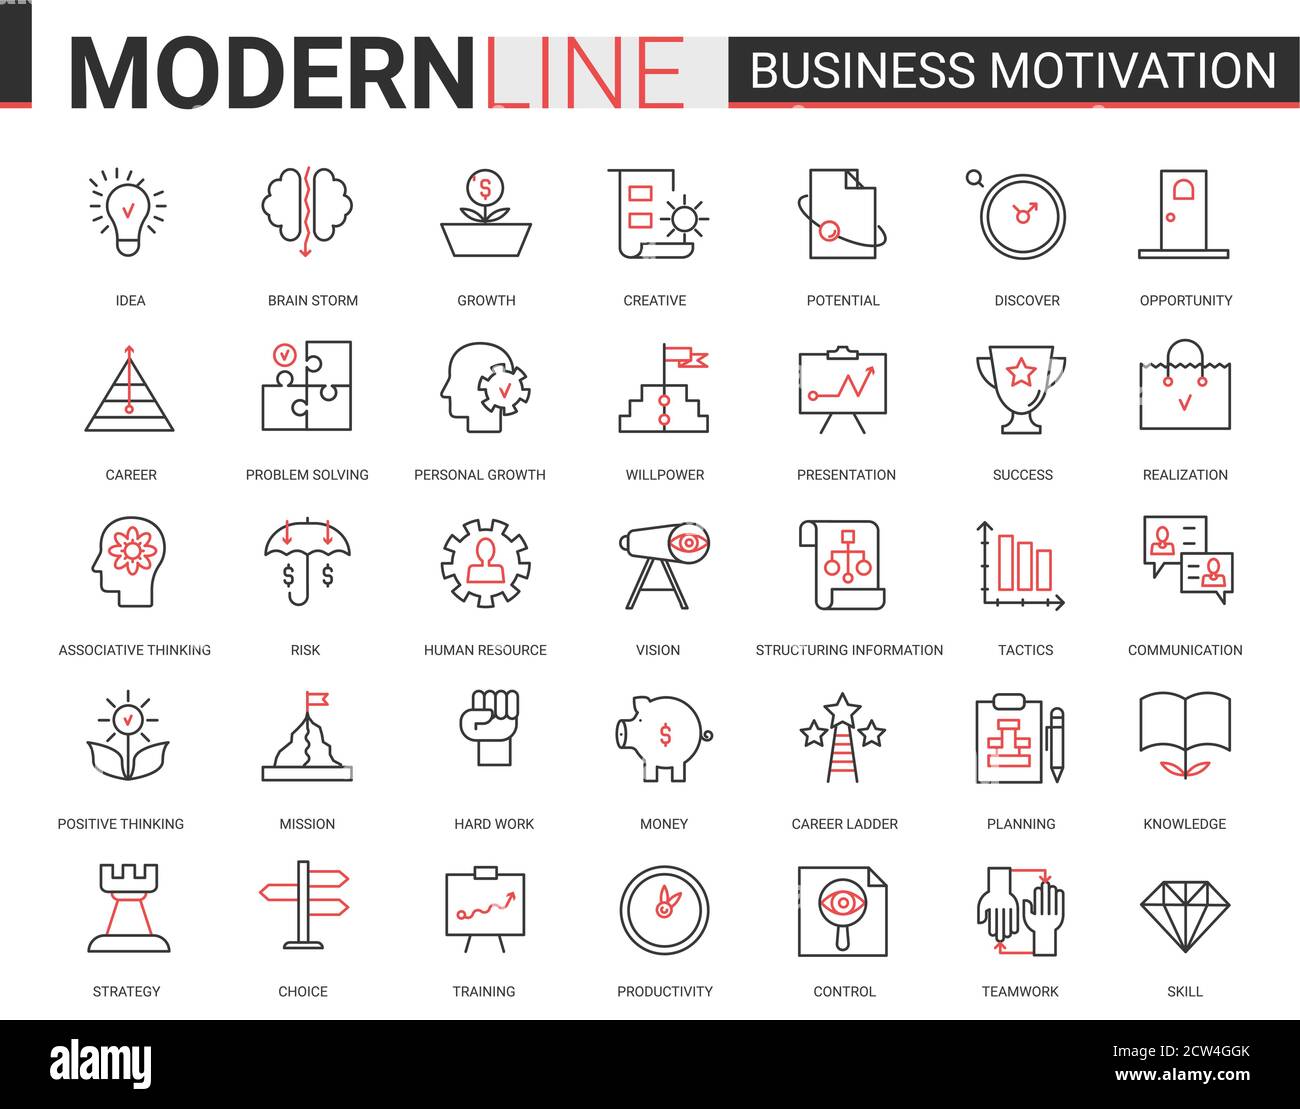 Business Motivation dünne rote schwarze Linie Symbol Vektor-Illustration Set mit motivationalen Umriss Symbole für die Produktivität von Finanzprozessen, Teamarbeit Geschäftsplanung, Kommunikationstraining Stock Vektor